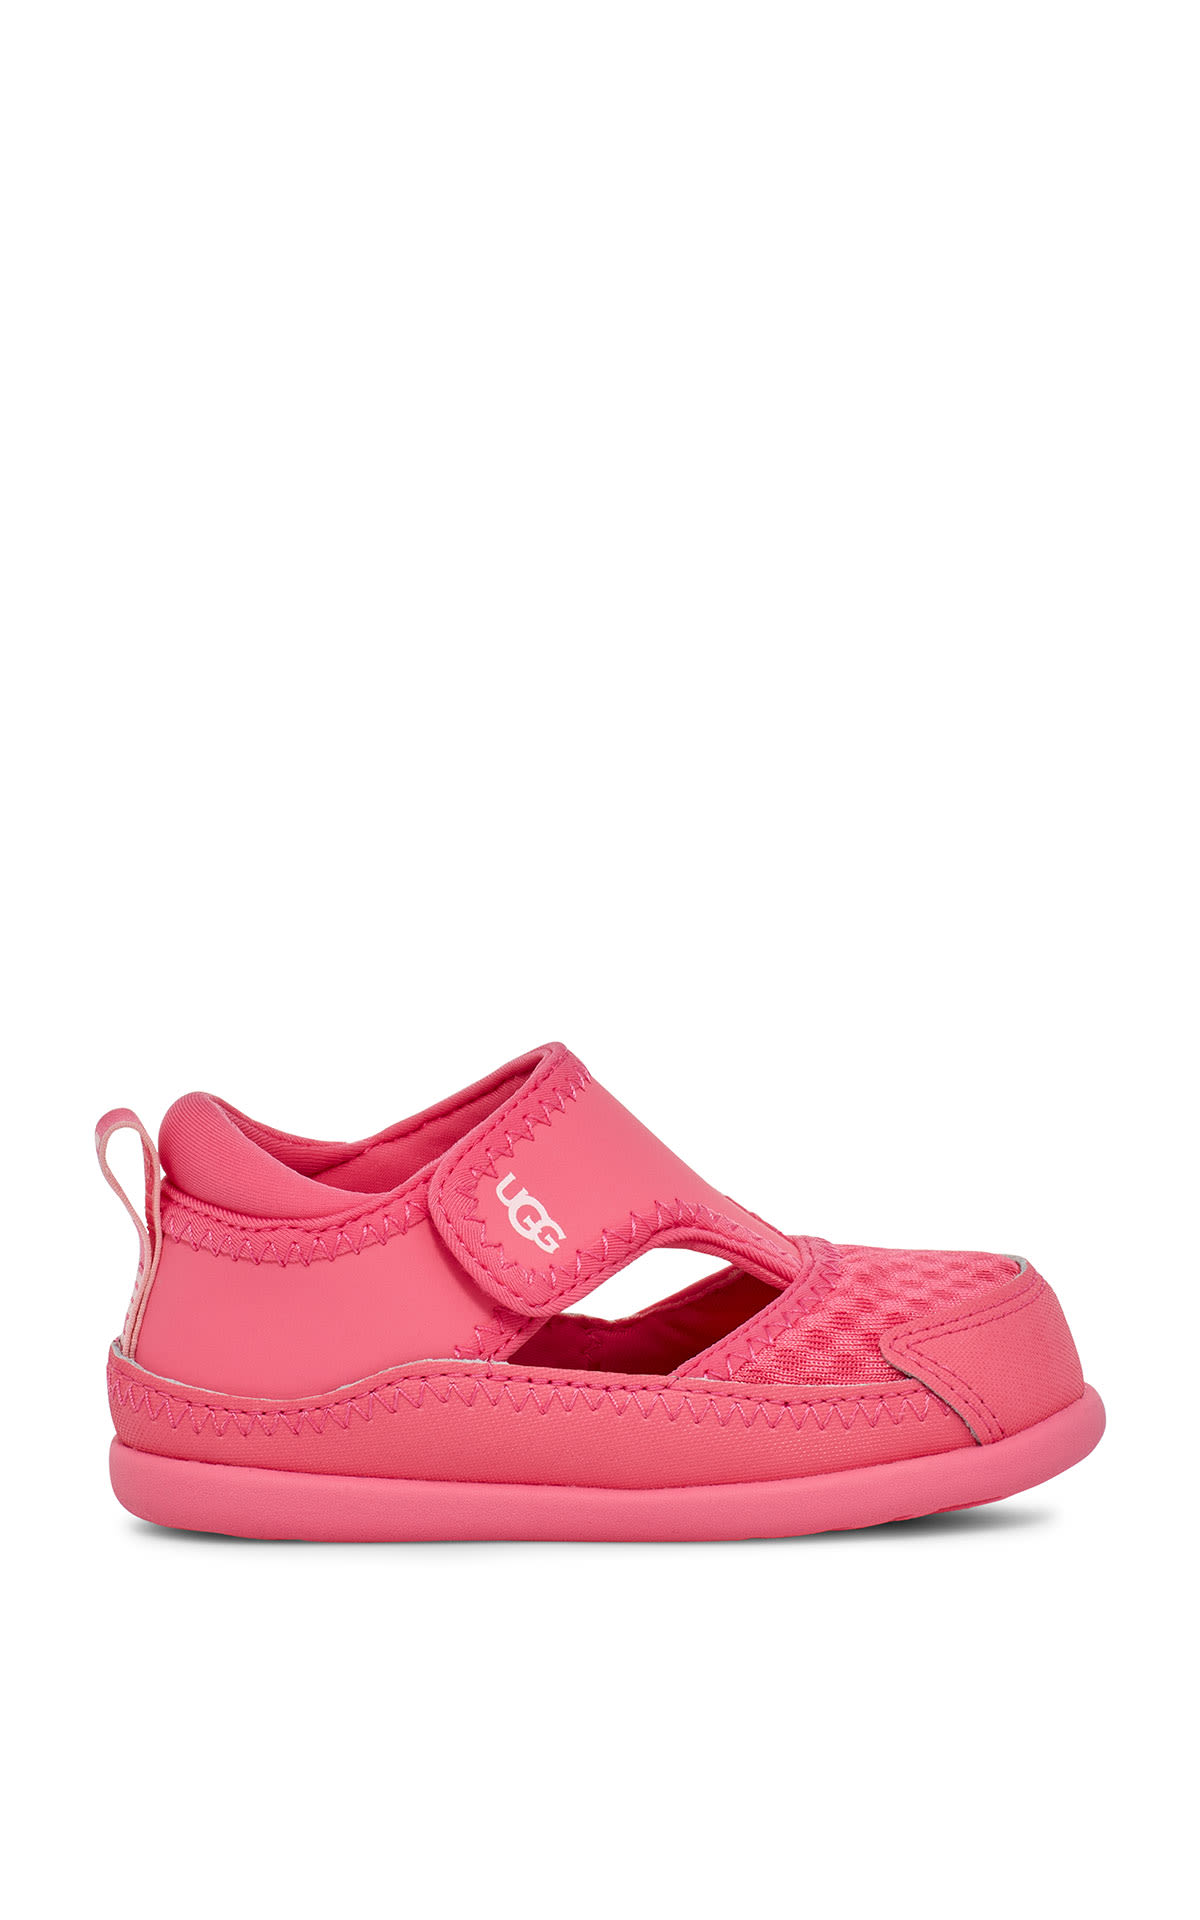 Girl's pink sandal  UGG